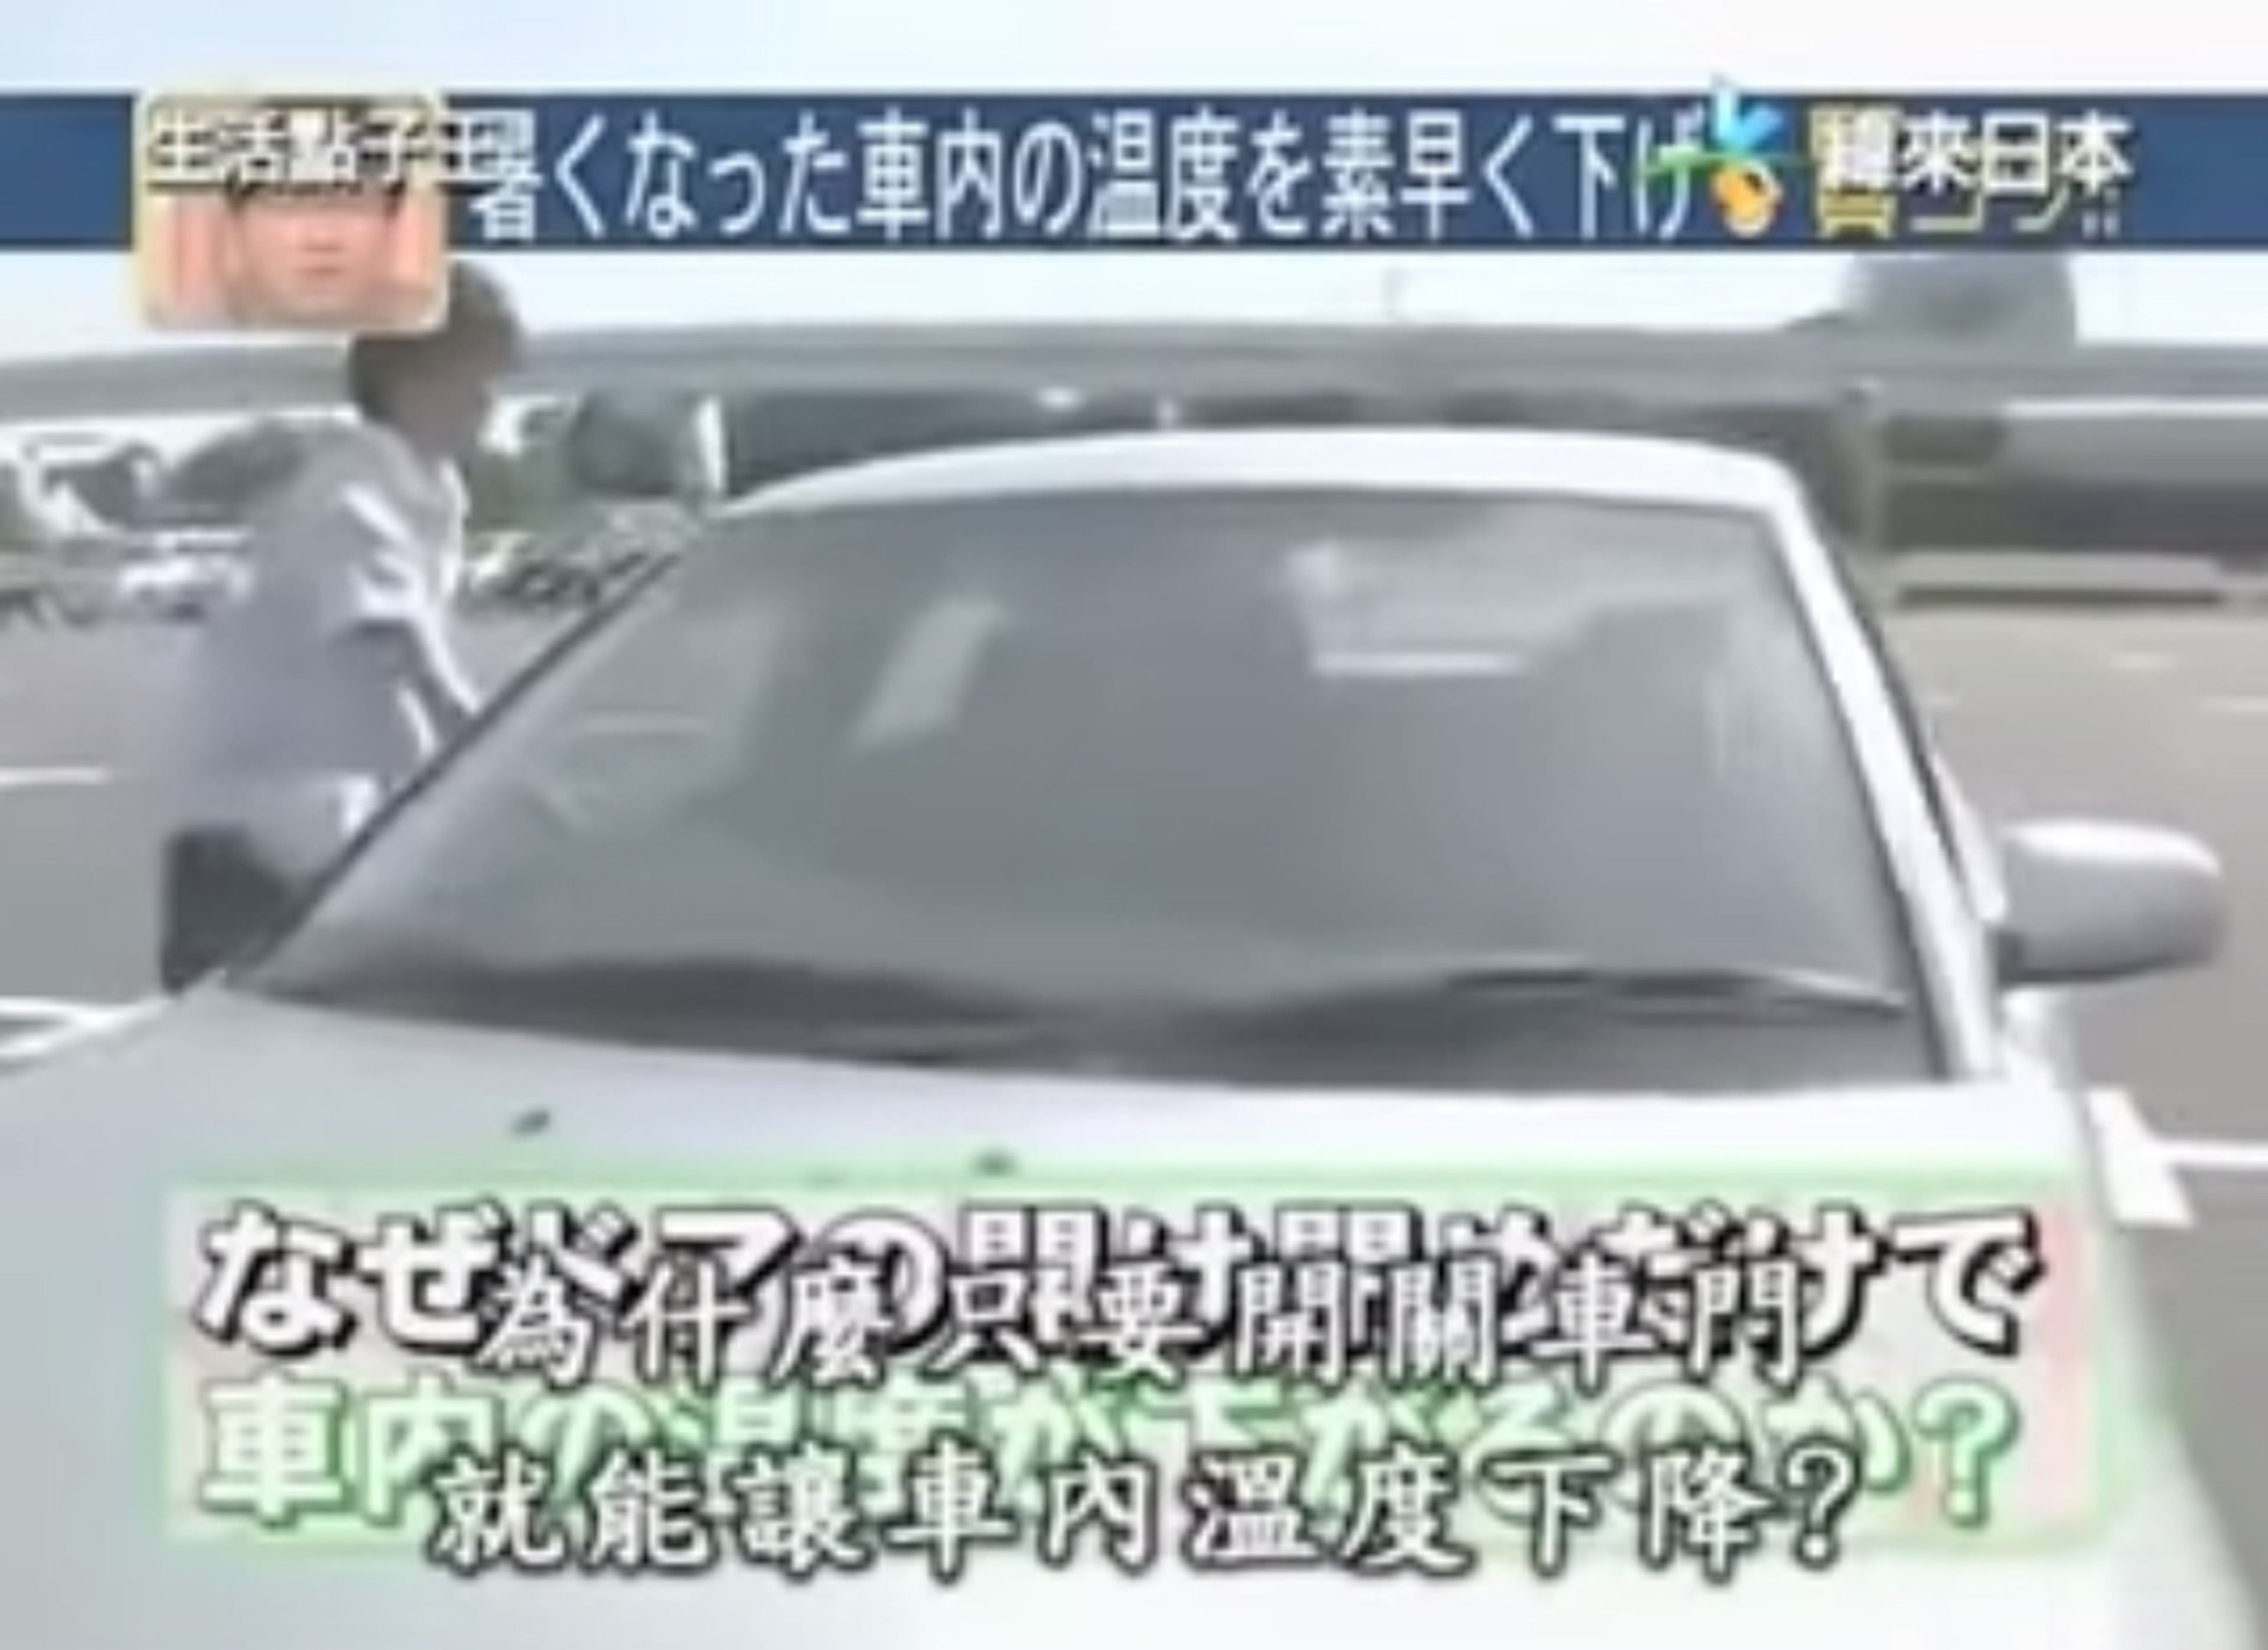 Método japonés para enfriar coche